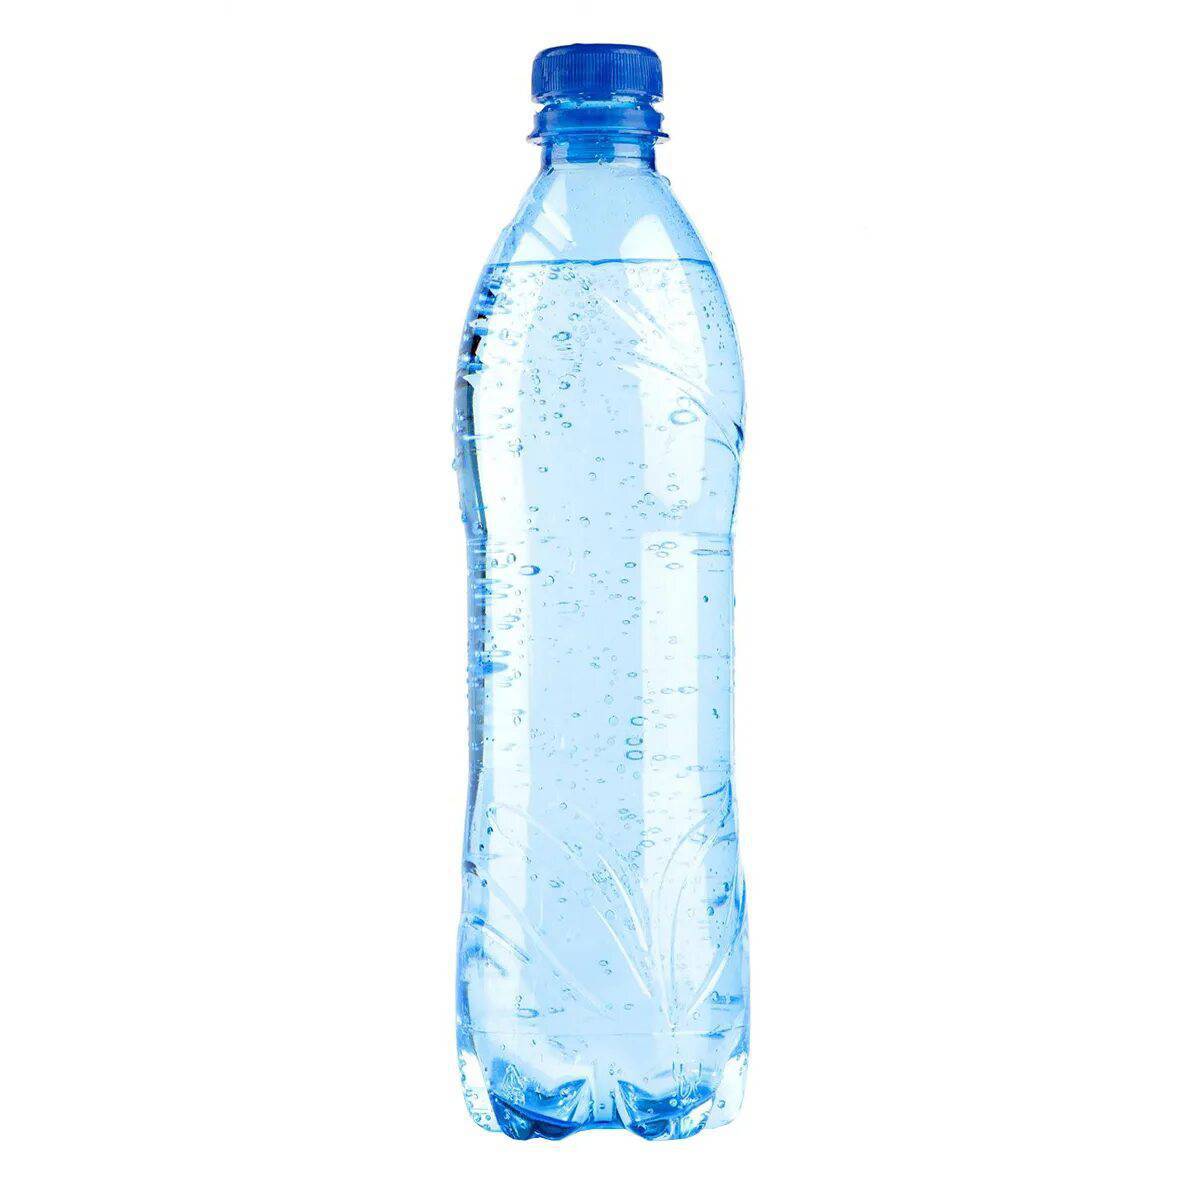 Бутылка воды 1 0. Бутылка для воды. Пластиковая бутылка для воды. Бутилированная минеральная вода. Бутылка воды без фона.